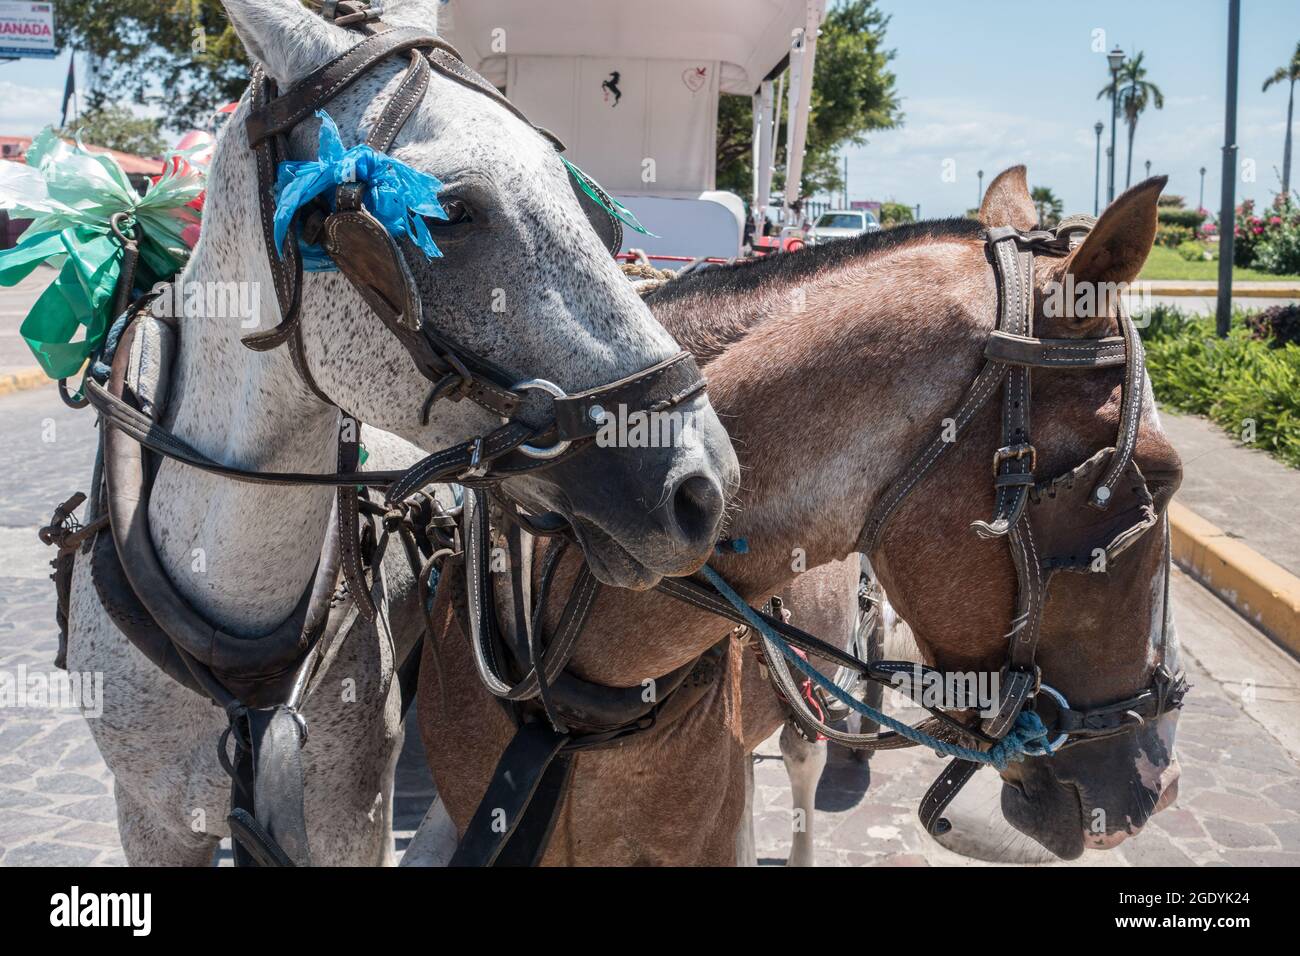 Vue rapprochée de deux chevaux de travail (Equus ferus) qui tirent une voiture touristique à Grenade, au Nicaragua. Banque D'Images